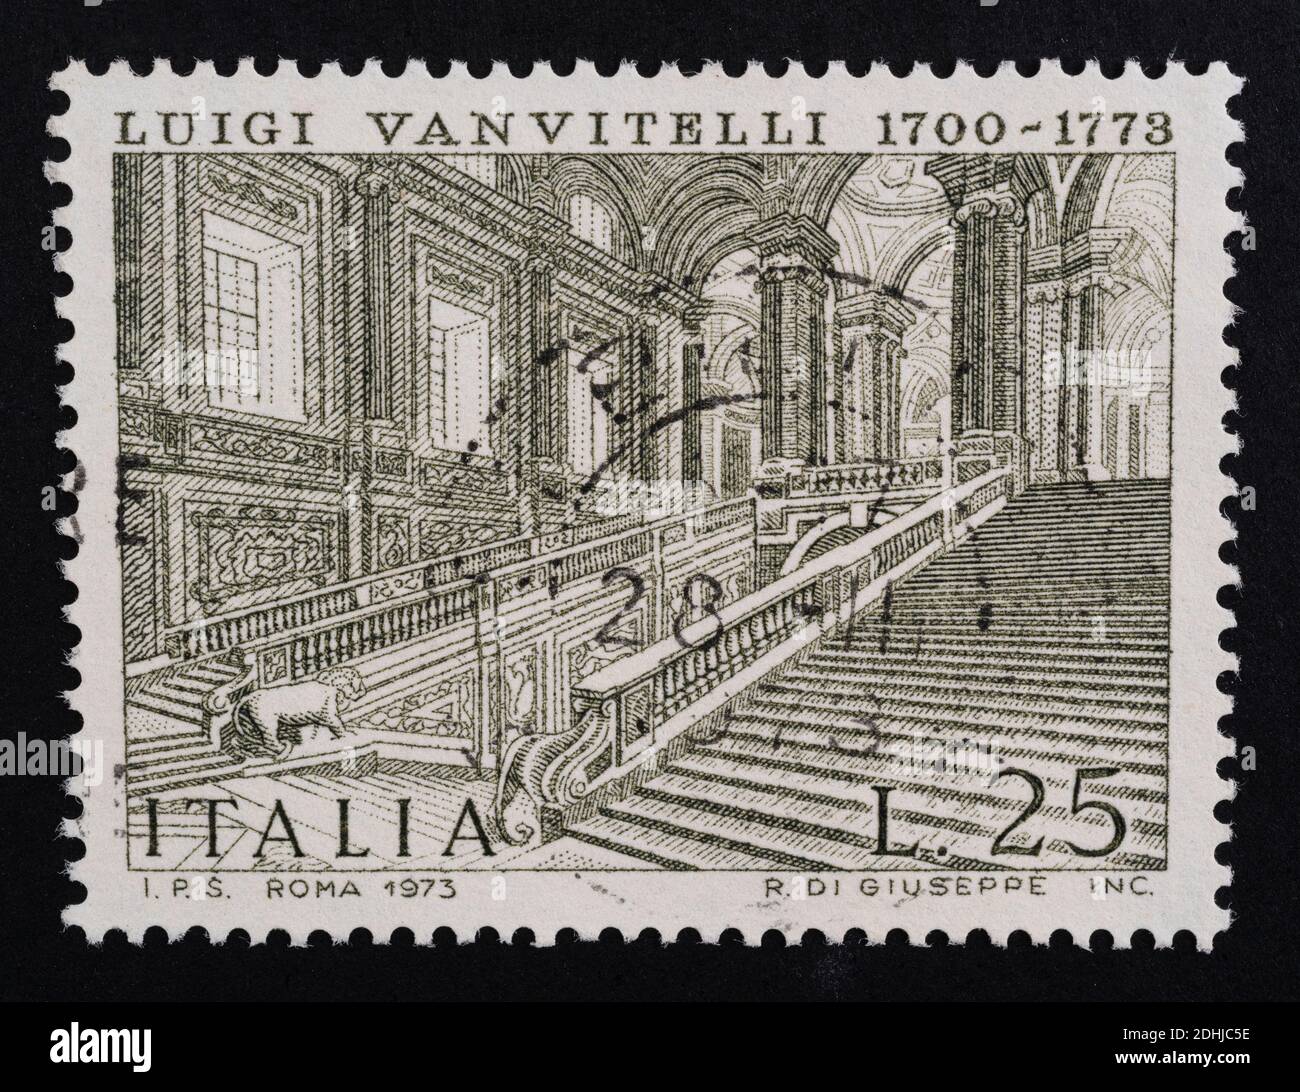 Udine, Italien. 10. Dezember 2020. Das Gedenken an Luigi Vanvitelli auf einer italienischen Briefmarke Stockfoto